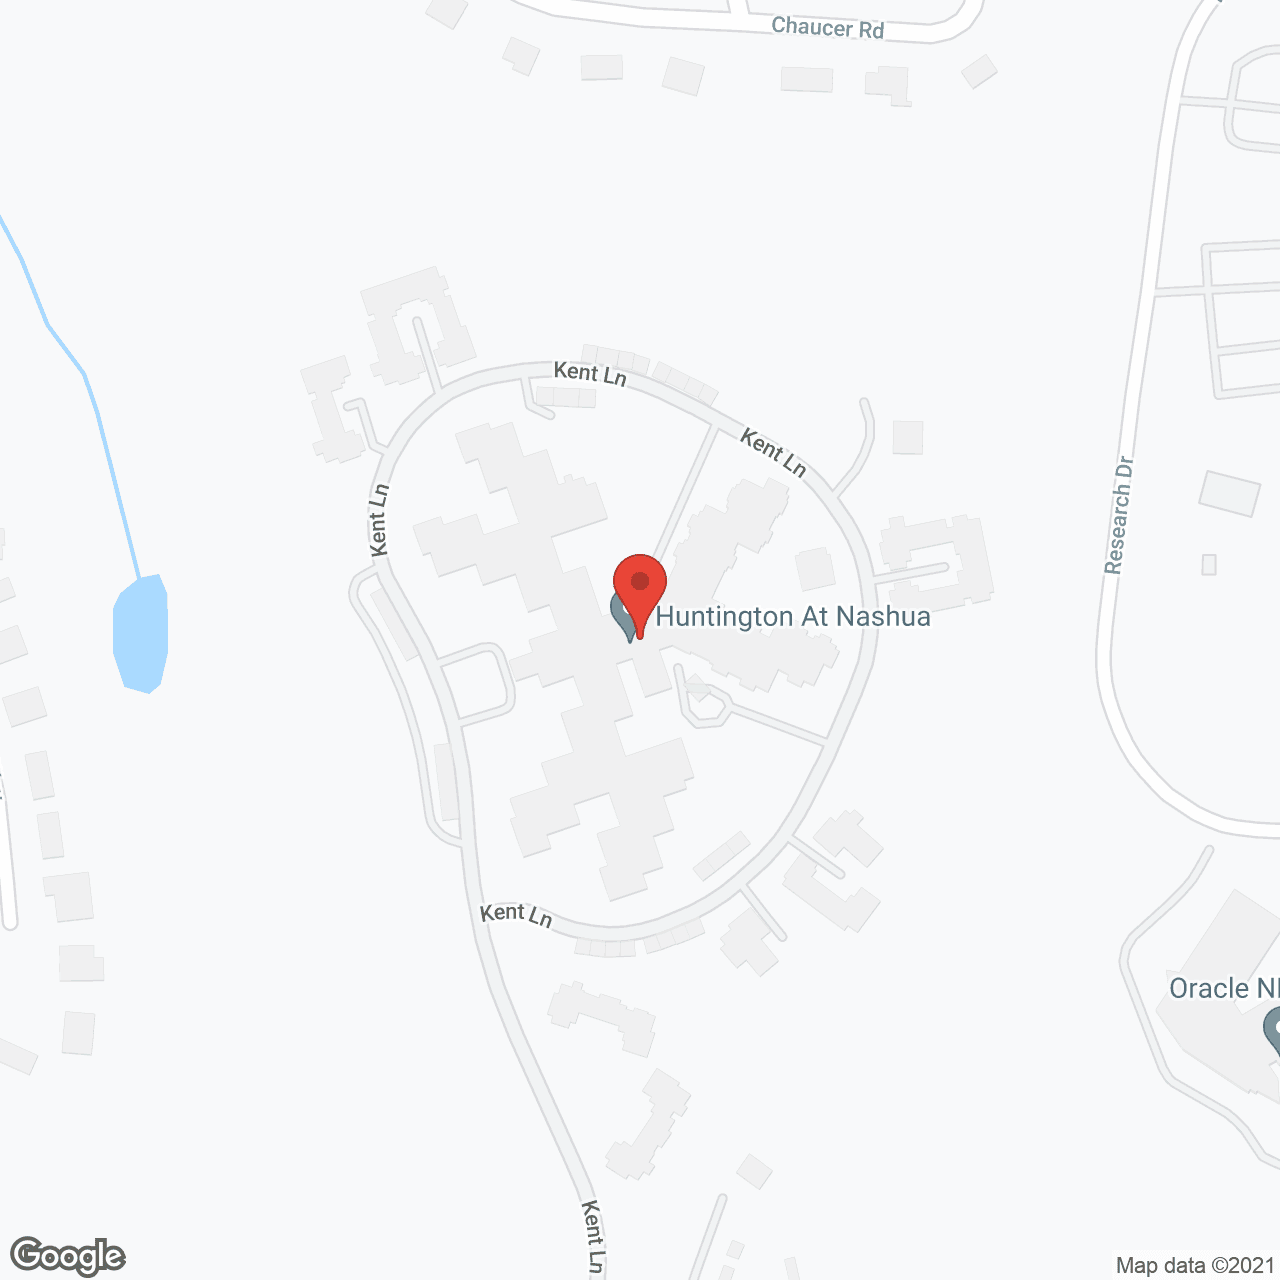 The Huntington at Nashua in google map